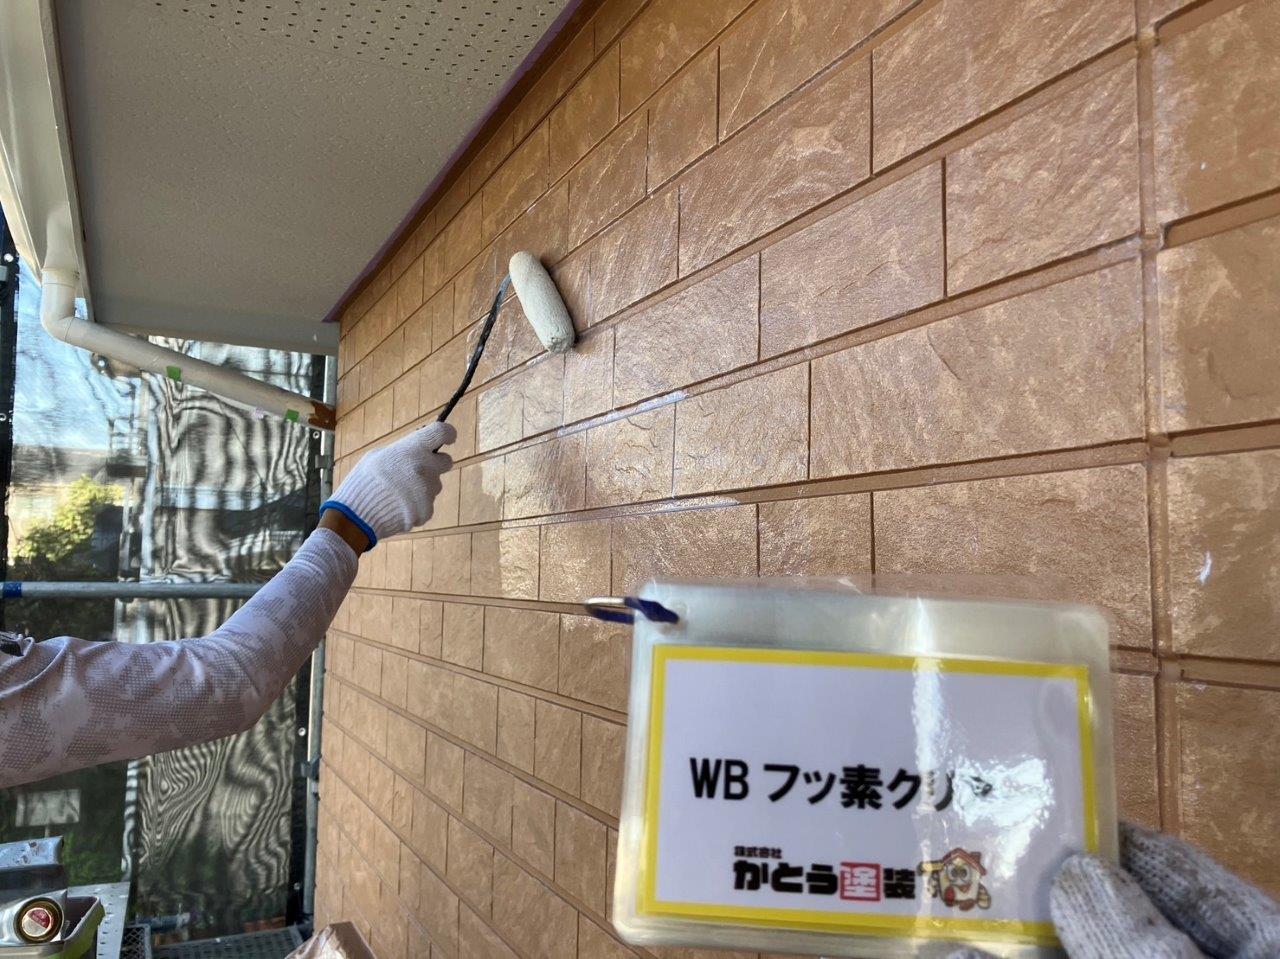 菊陽町S様邸外壁塗装，WB多彩模様仕上げ工法のフッ素クリアー塗装をおこないました。